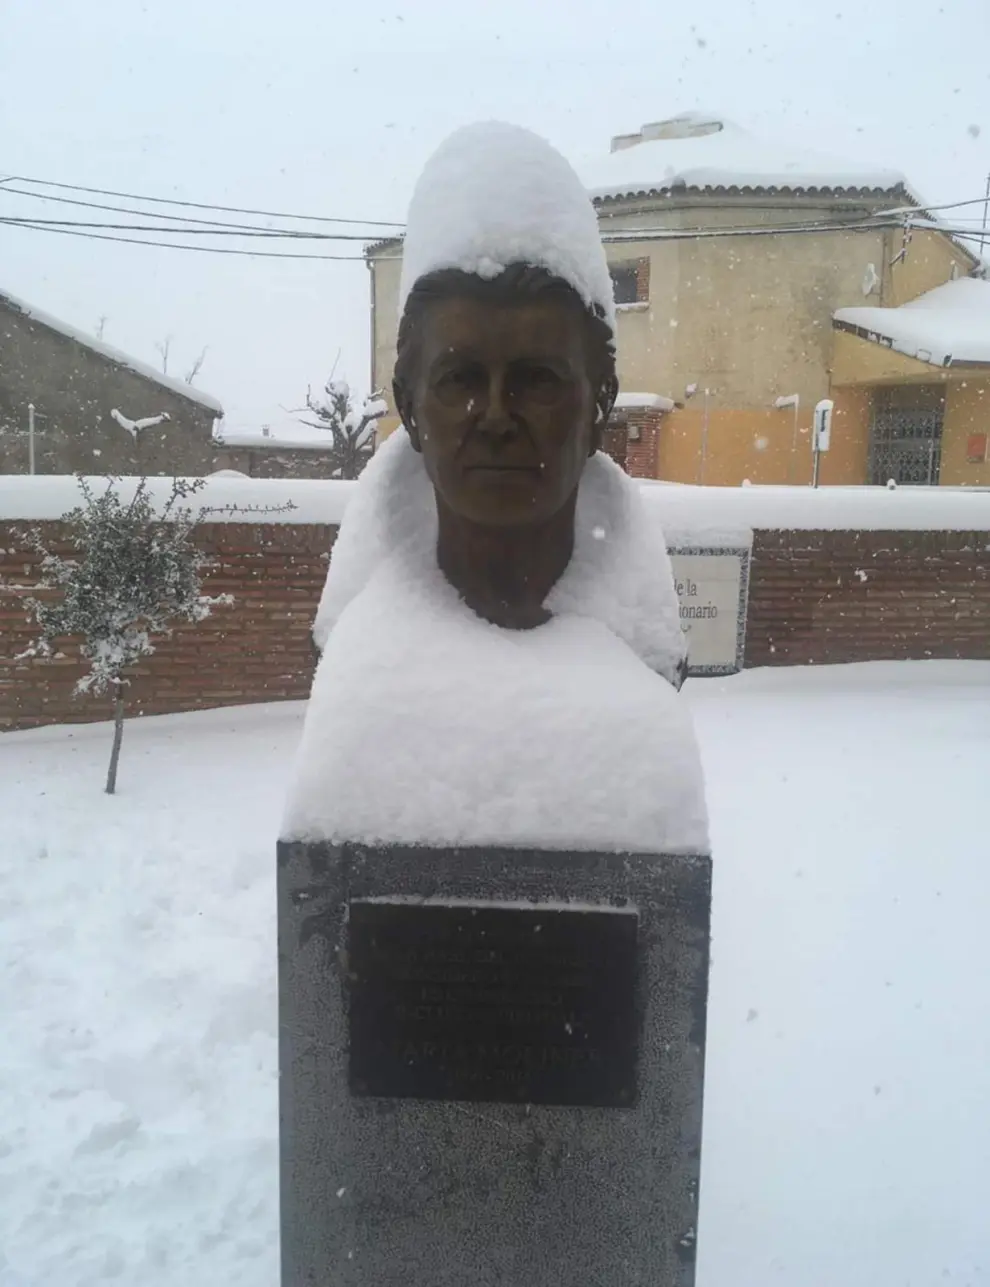 La nieve sirvió de original tocado al busto de María Moliner en su localidad natal, Paniza.